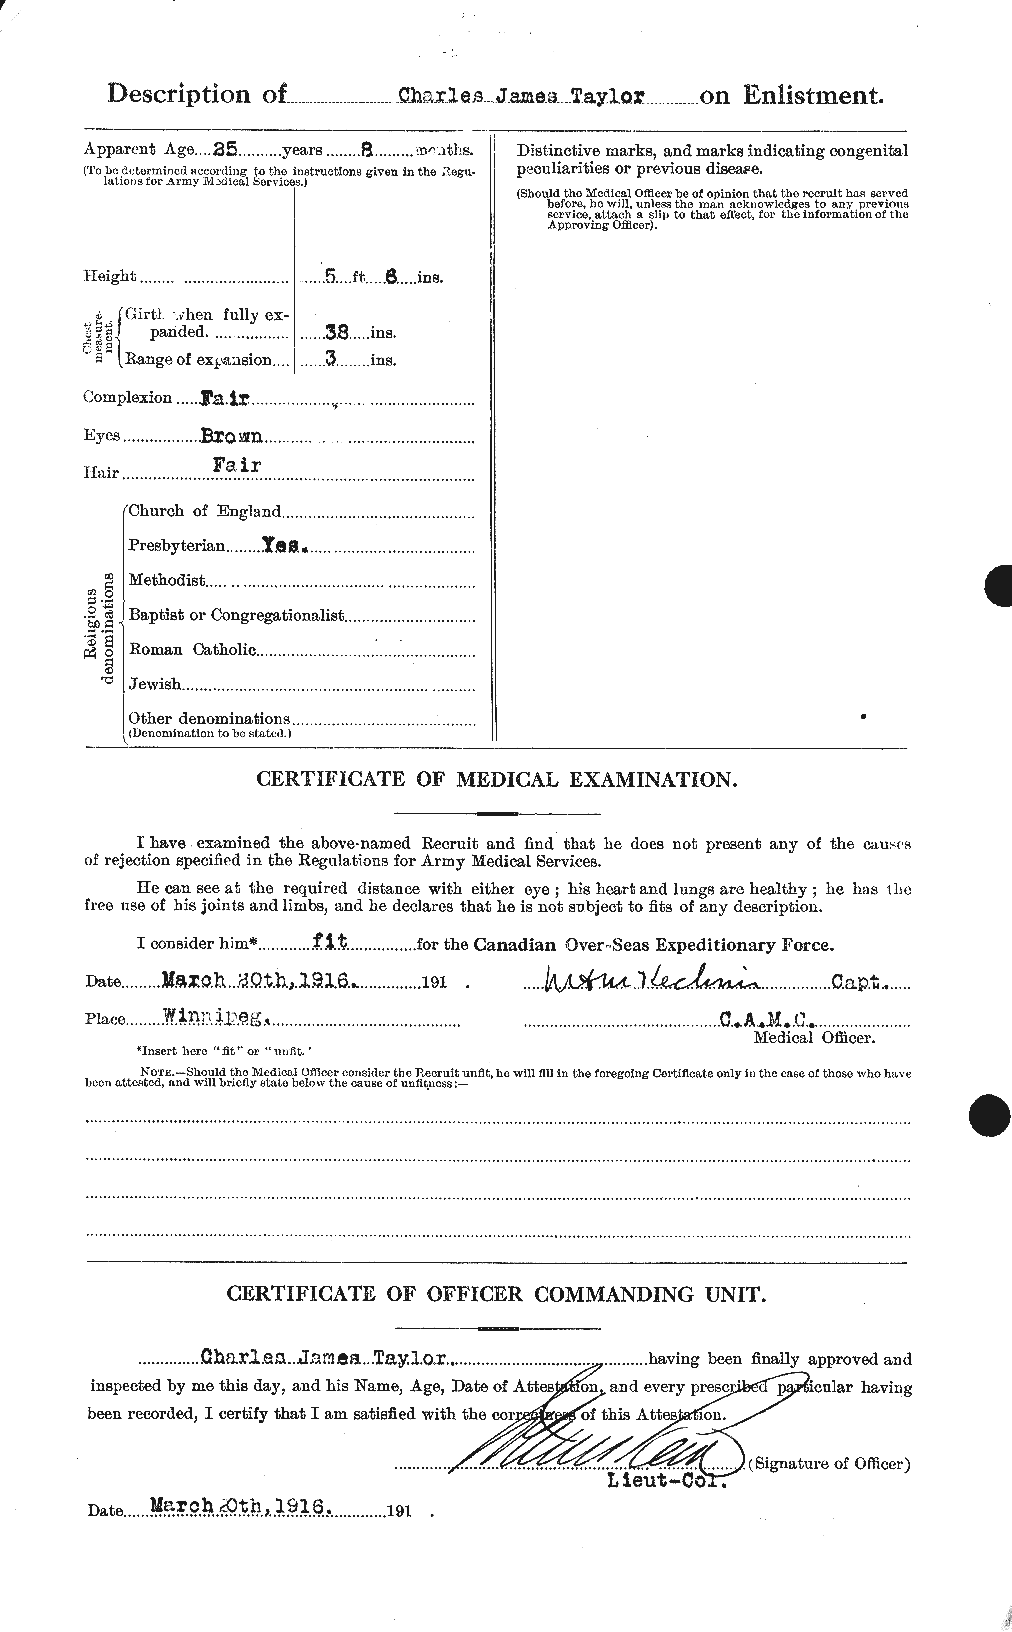 Dossiers du Personnel de la Première Guerre mondiale - CEC 626860b